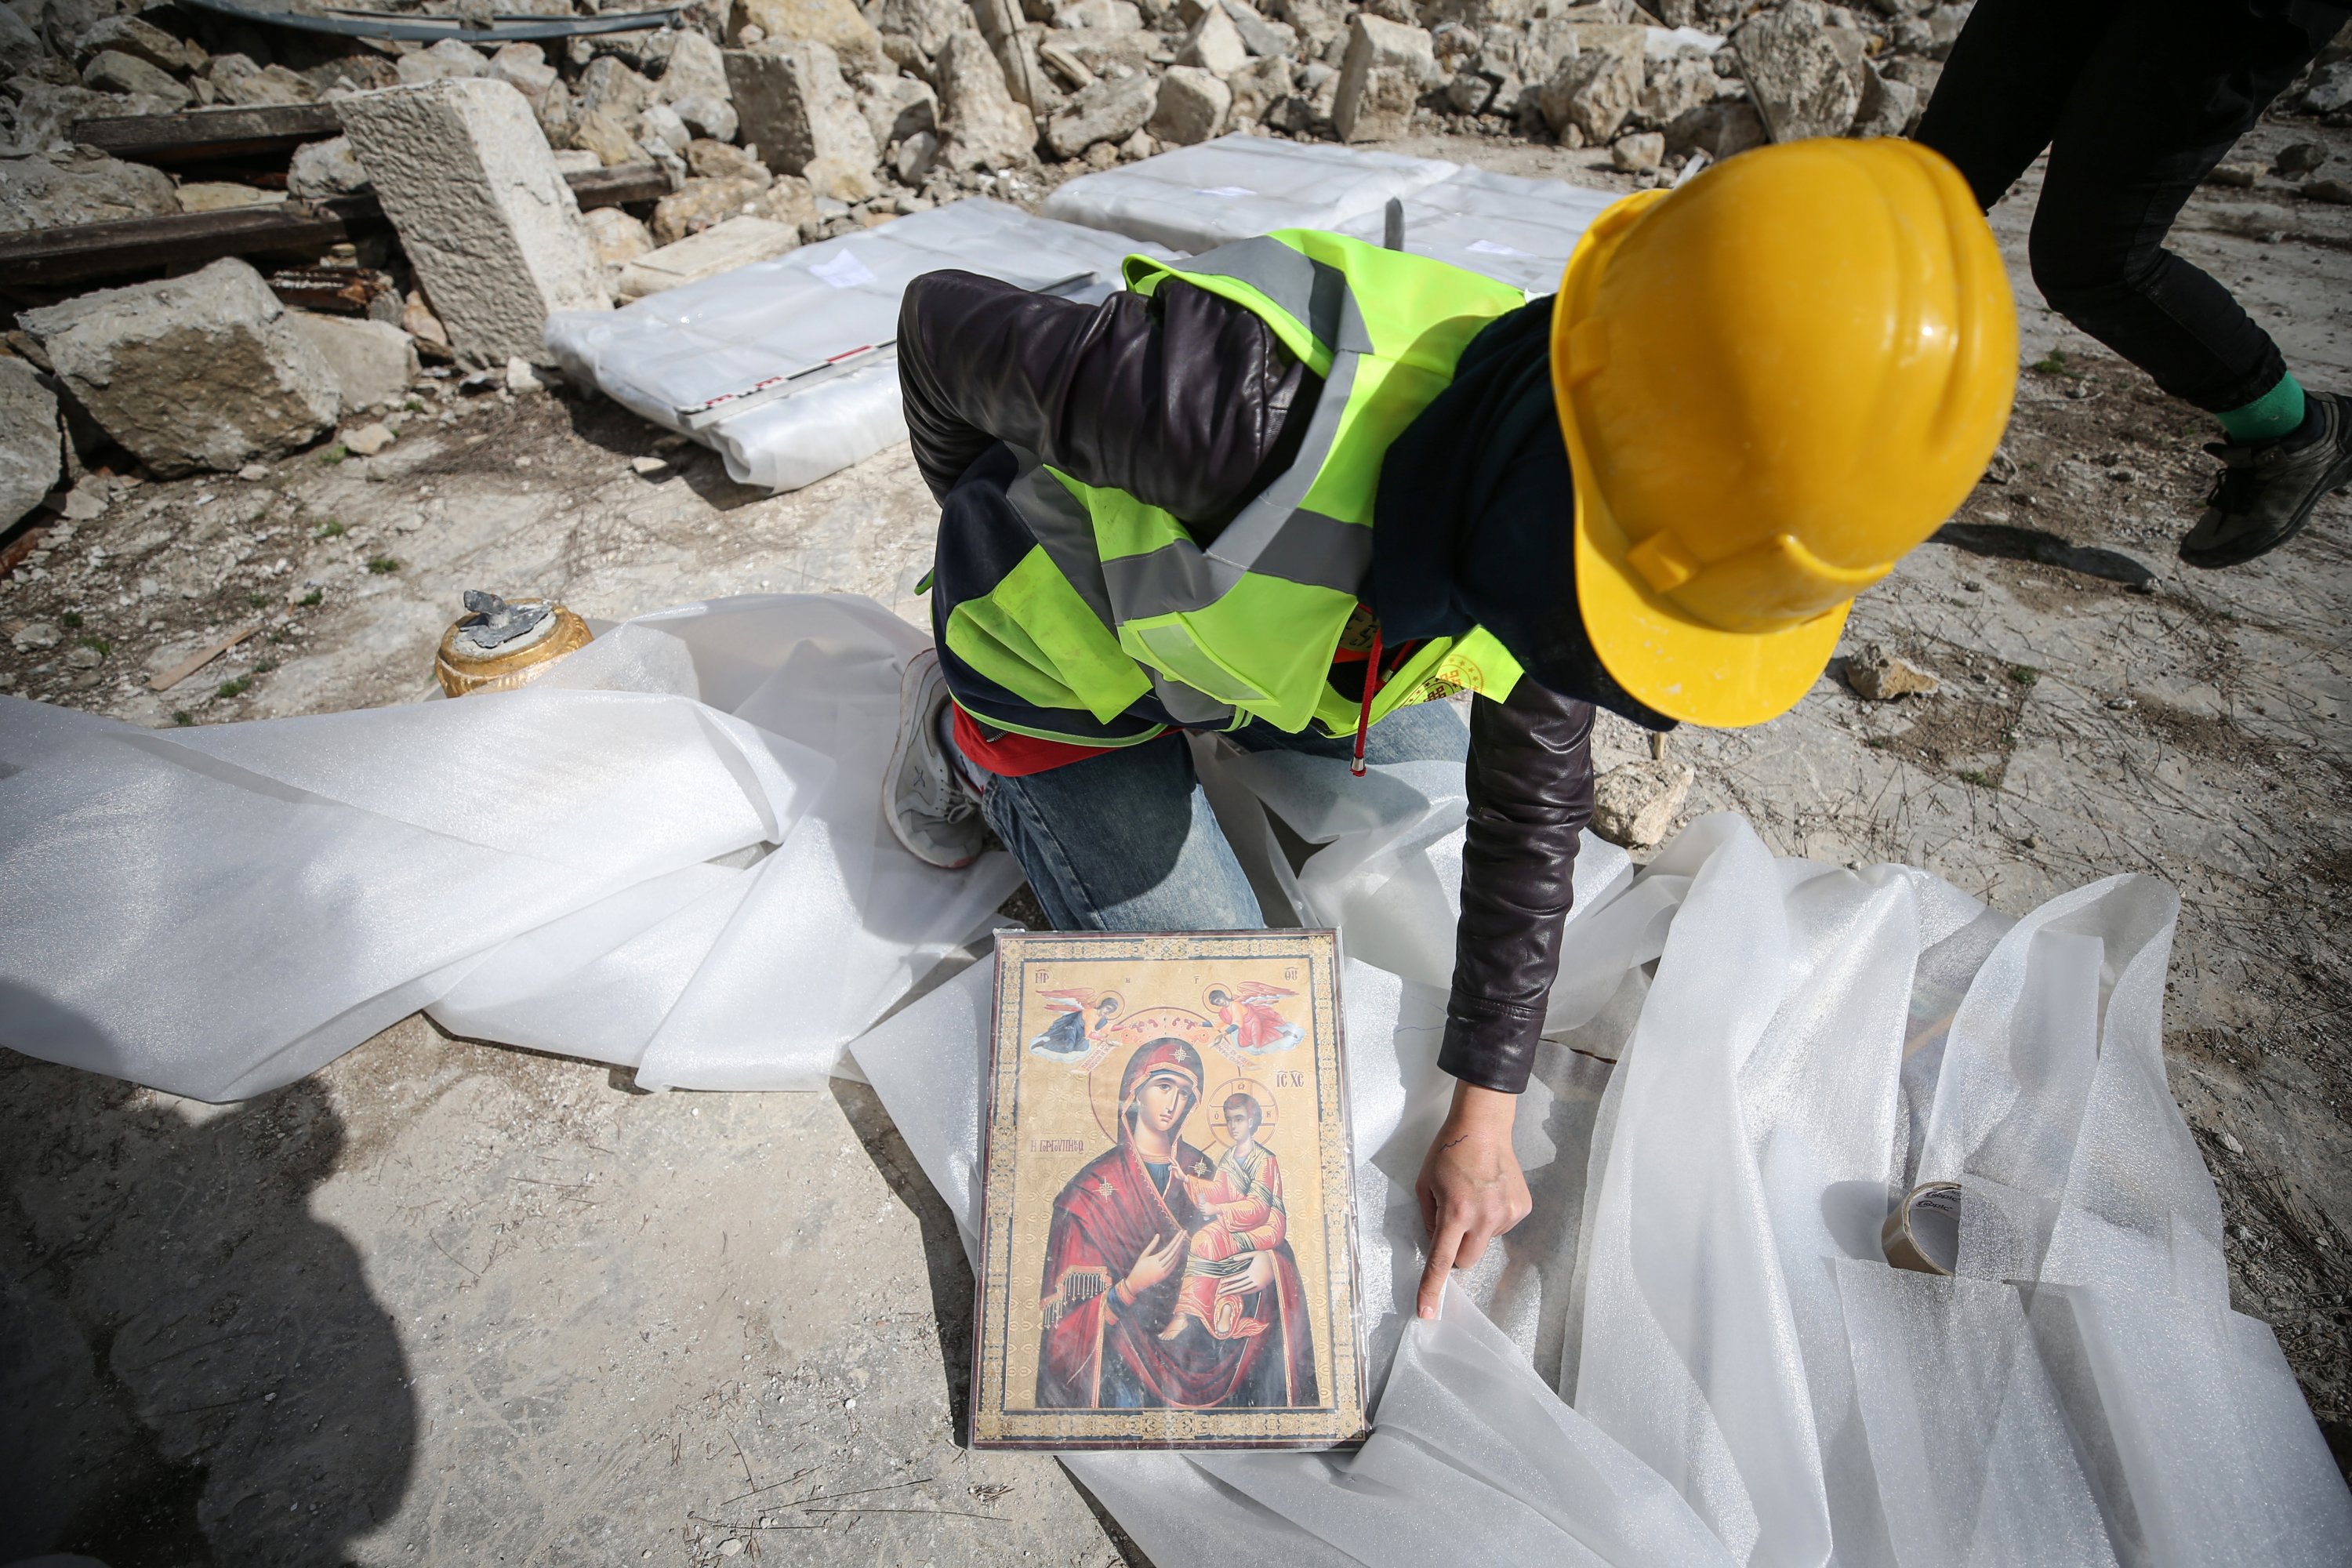 Gereja Ortodoks Yunani Antakya di Hatay, yang hancur akibat gempa bumi, telah dilindungi dengan banyak Alkitab dan berbagai bahan yang diambil dari puing-puing, Hatay, Türkiye, 15 Maret 2023. (Foto AA)